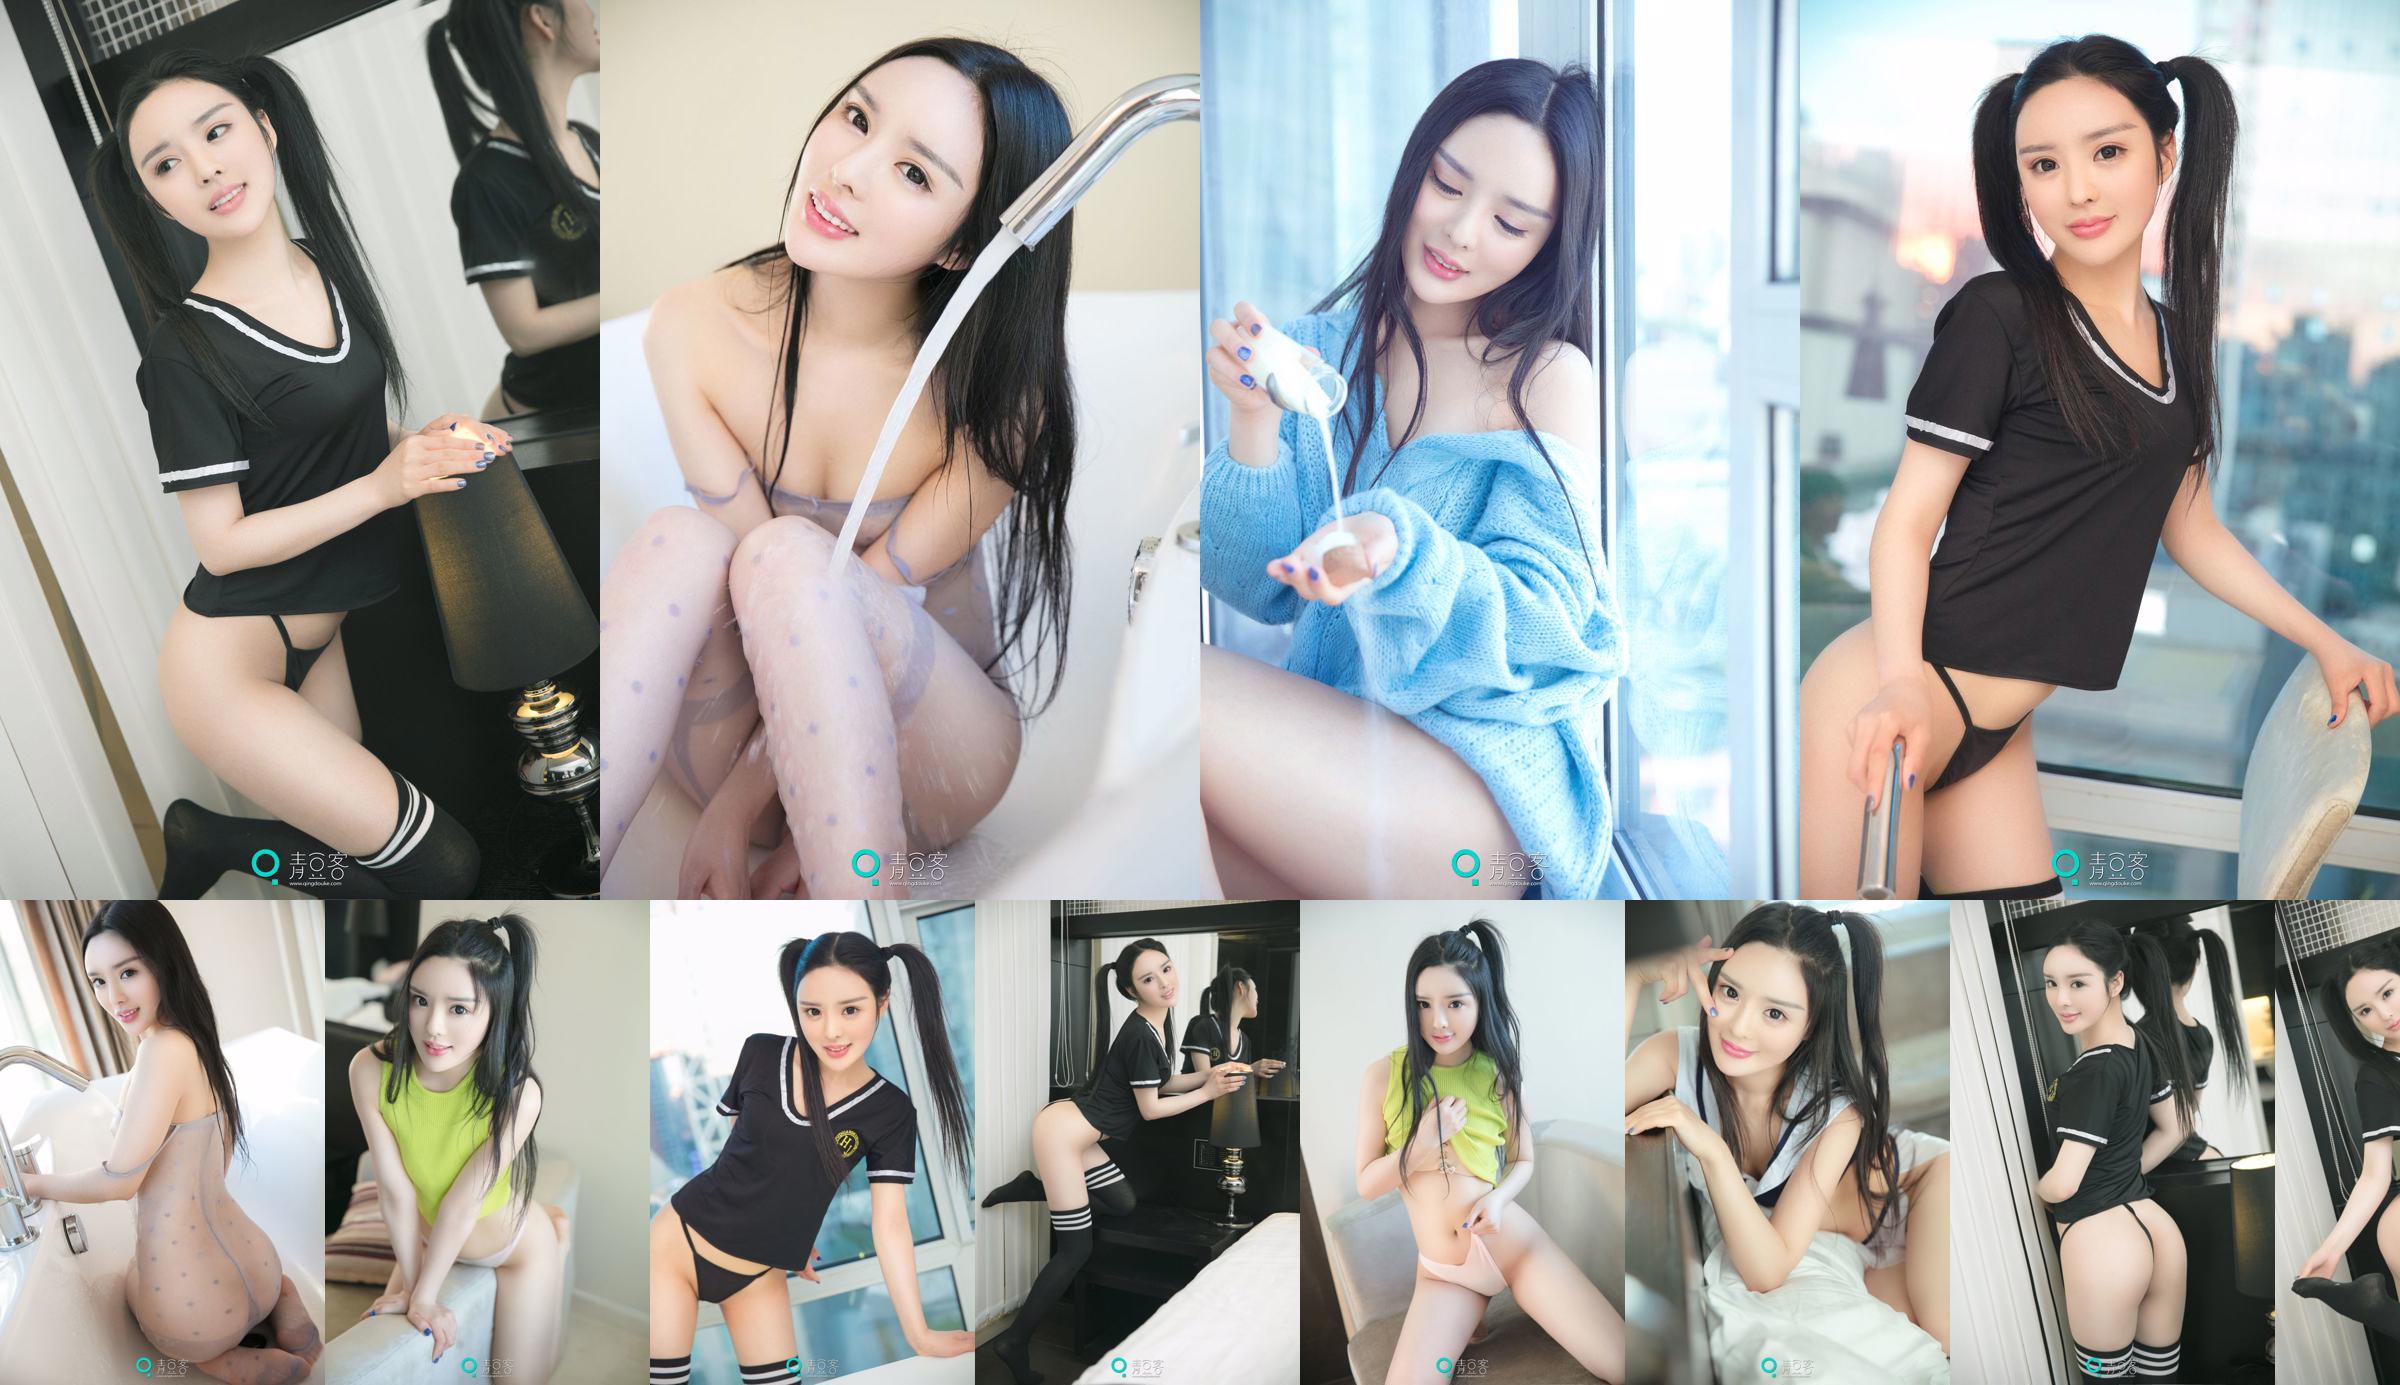 Xiao Di "Sexy trui + uniform" [Qing Dou Ke] No.8fe68d Pagina 1